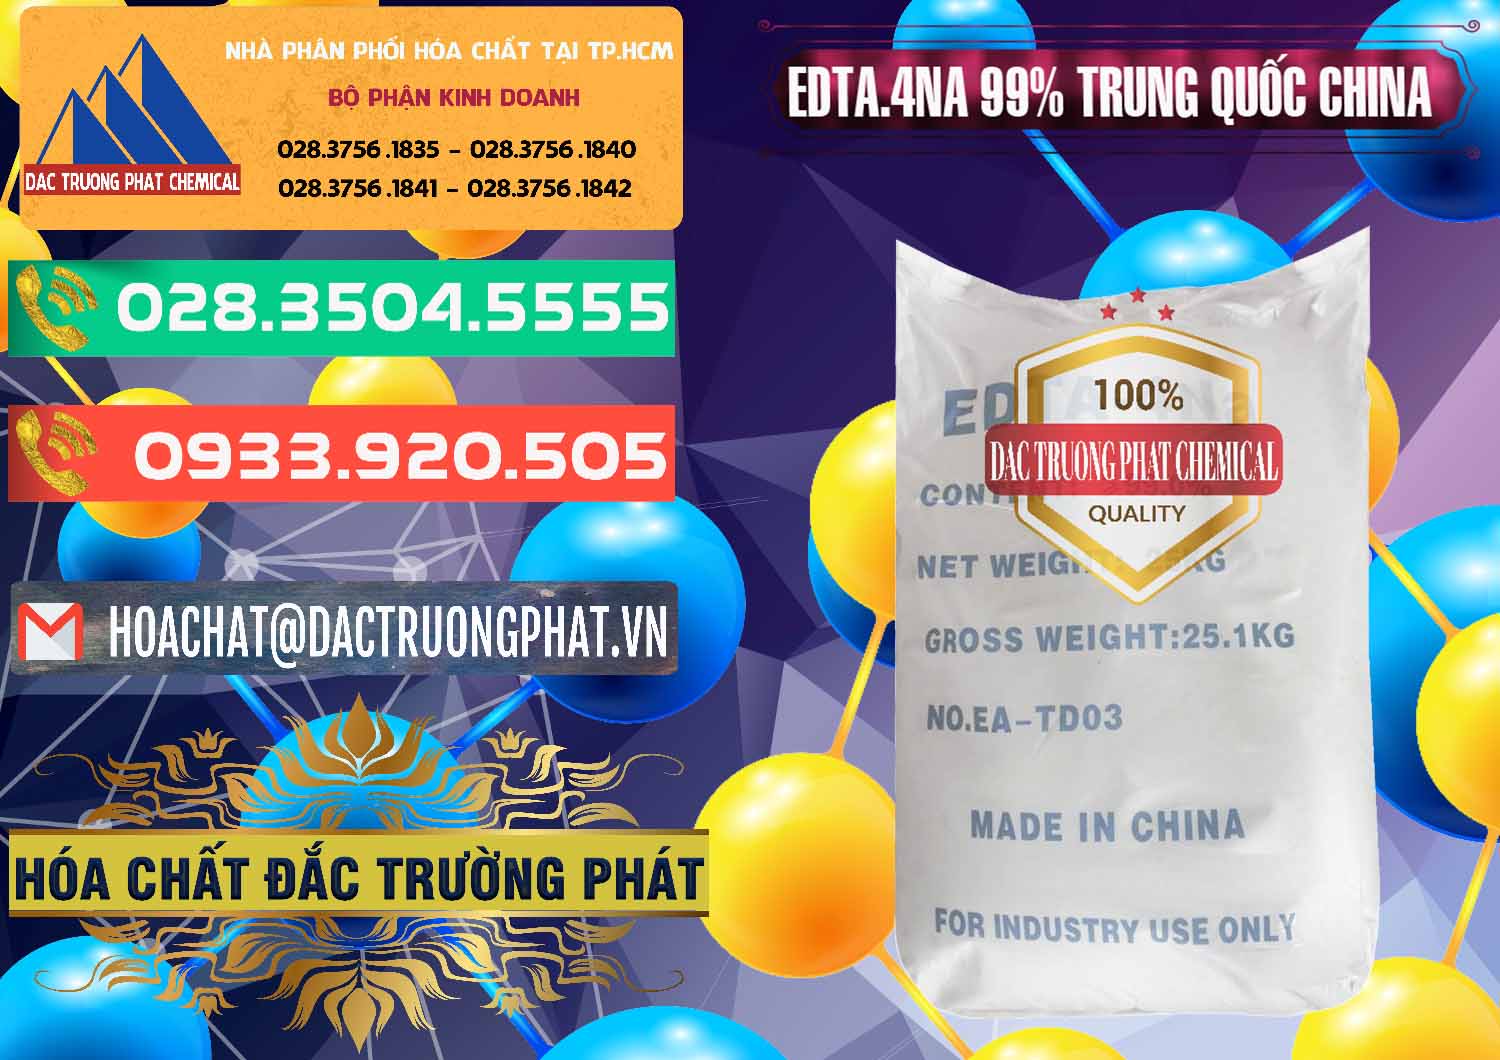 Nơi chuyên kinh doanh - bán EDTA.4NA - EDTA Muối 99% Trung Quốc China - 0292 - Phân phối ( kinh doanh ) hóa chất tại TP.HCM - congtyhoachat.com.vn